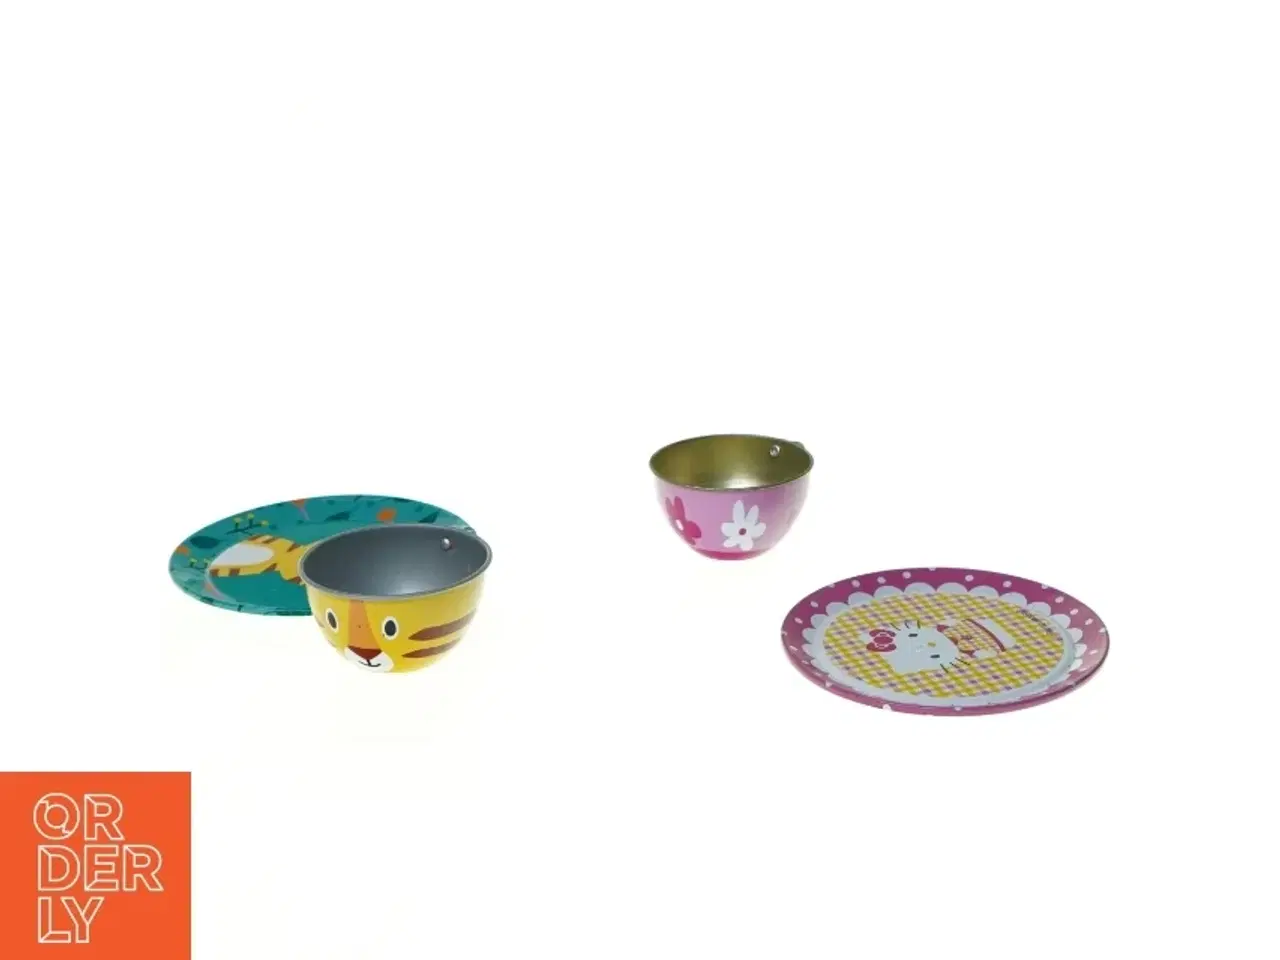 Billede 2 - Forskellige køkkengrej legetøj (str. 13 x 5 cm)